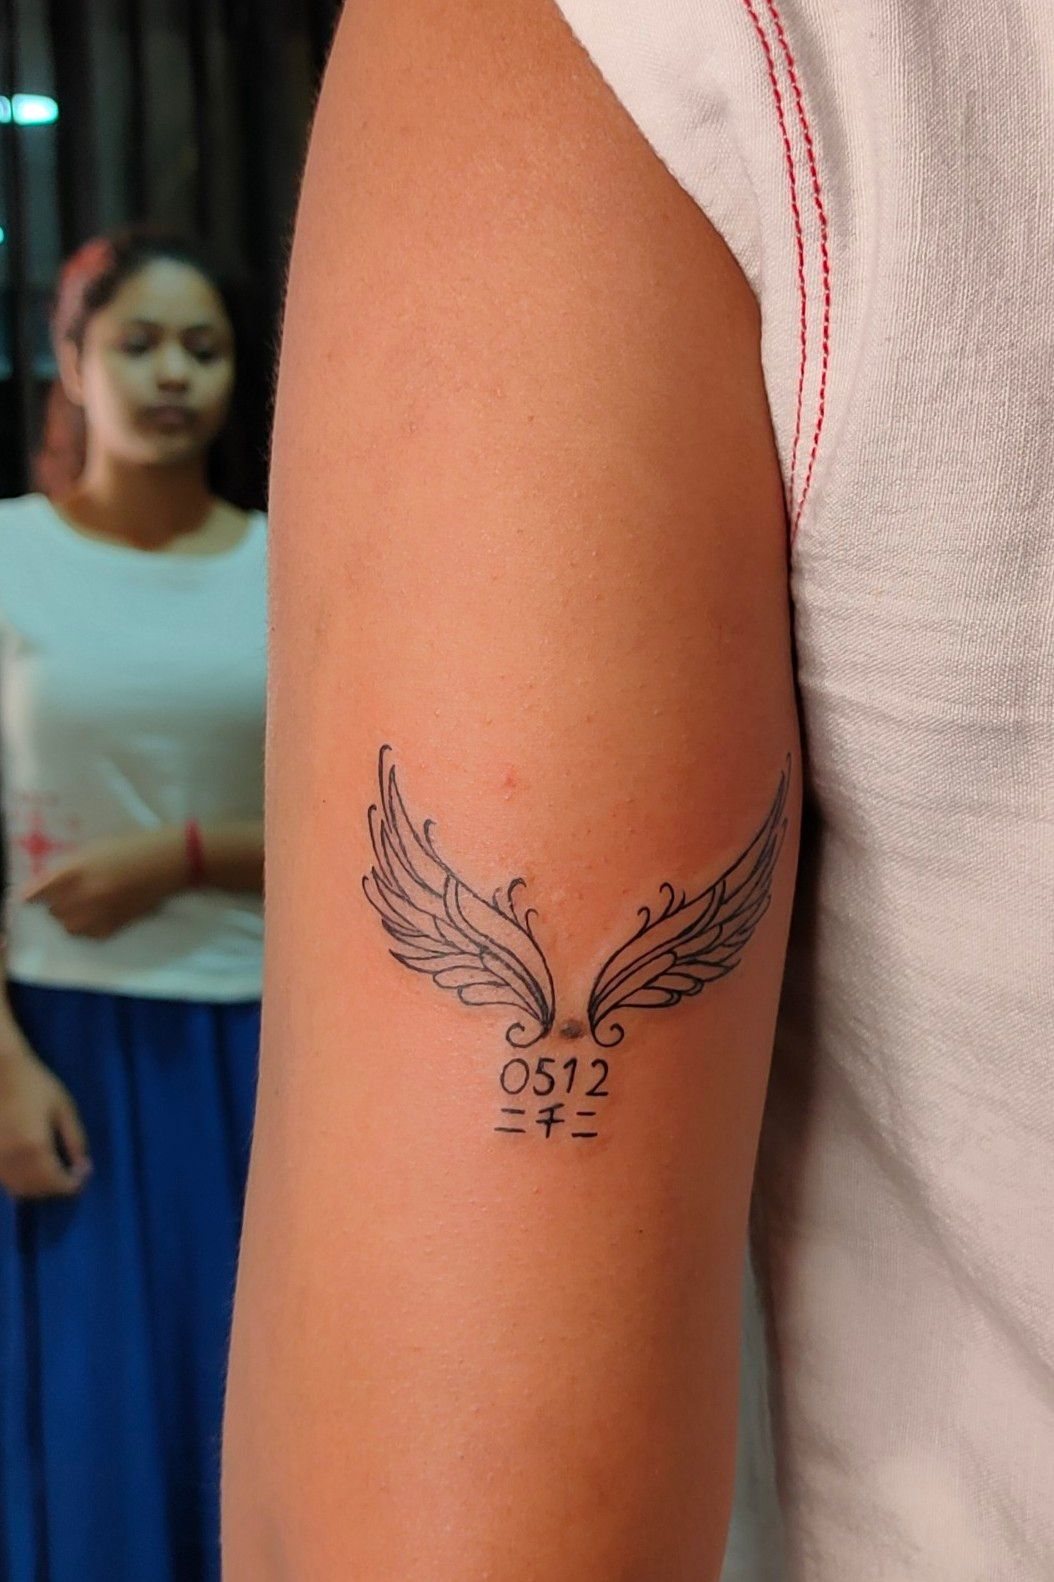 maapaa wing Tattoo maapaa wingtattoo tattoo call whstapp 09899473688   Wing tattoo Tattoos Ink tattoo